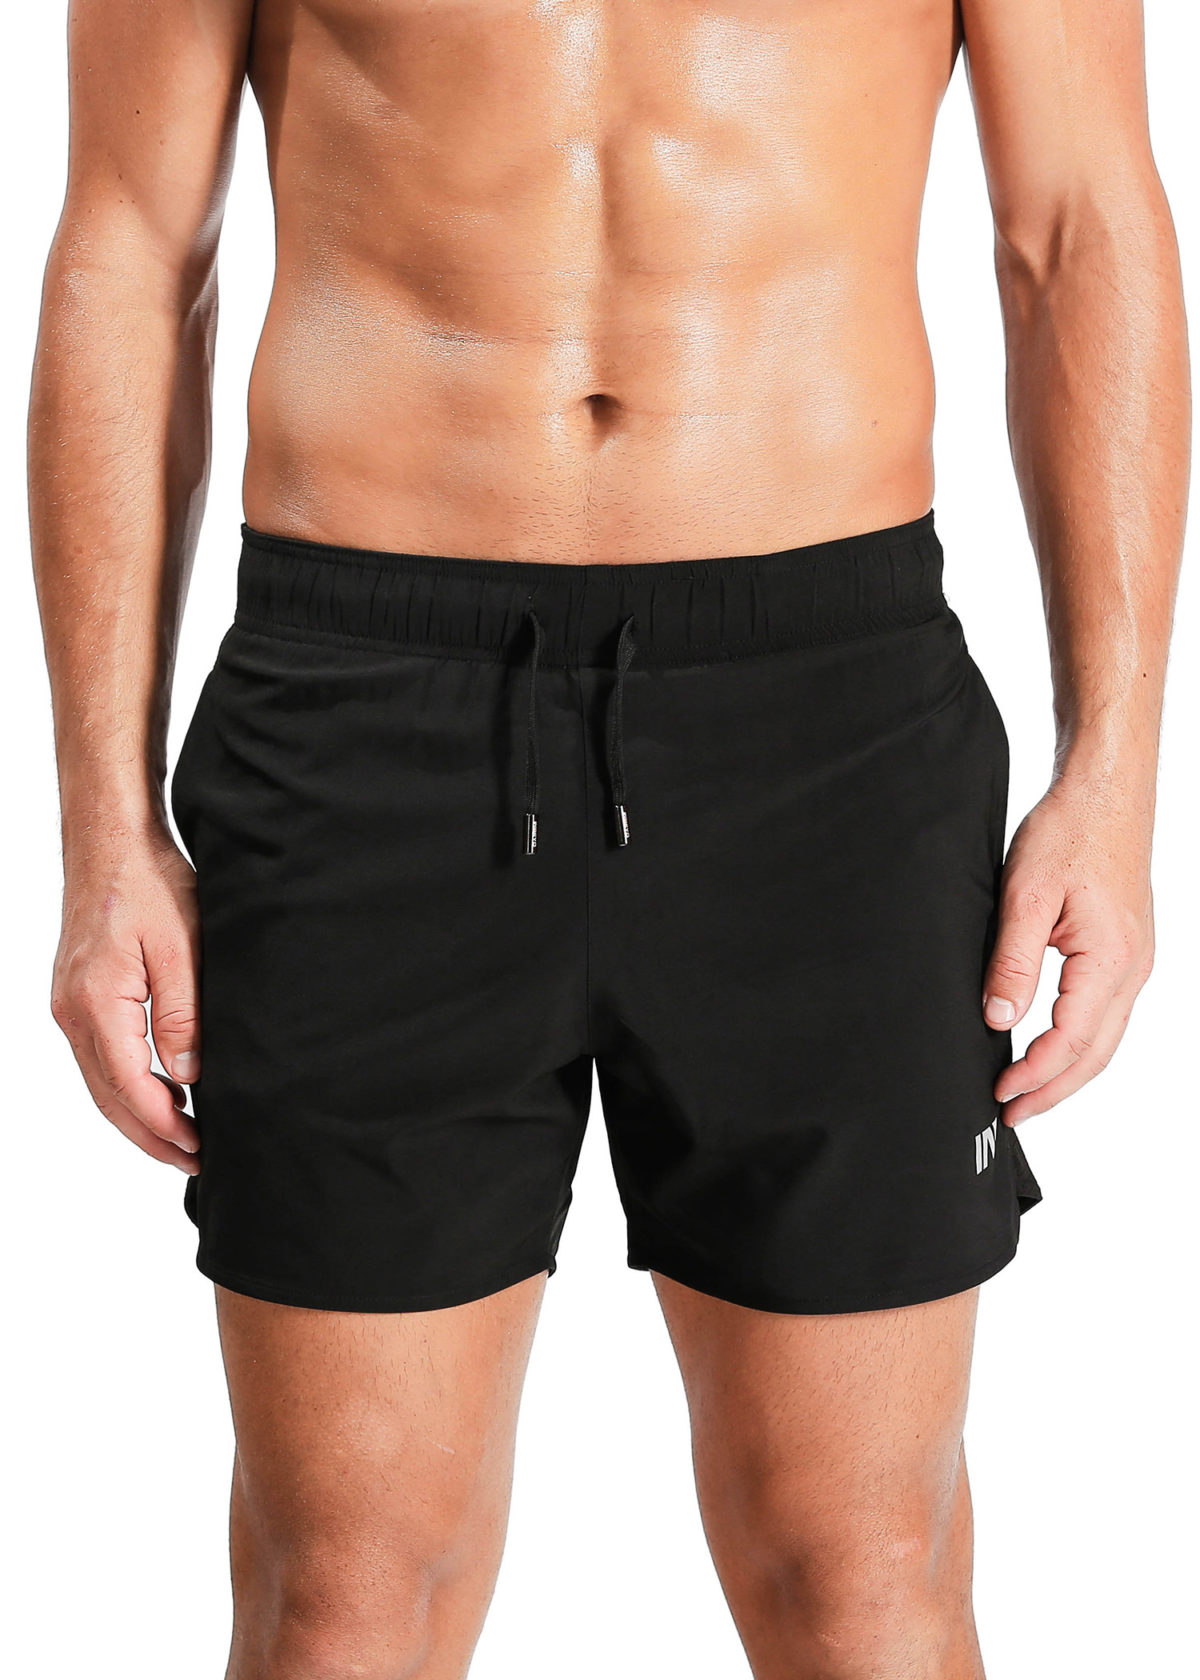 Black stretch gym shorts – www.inbeyo.com